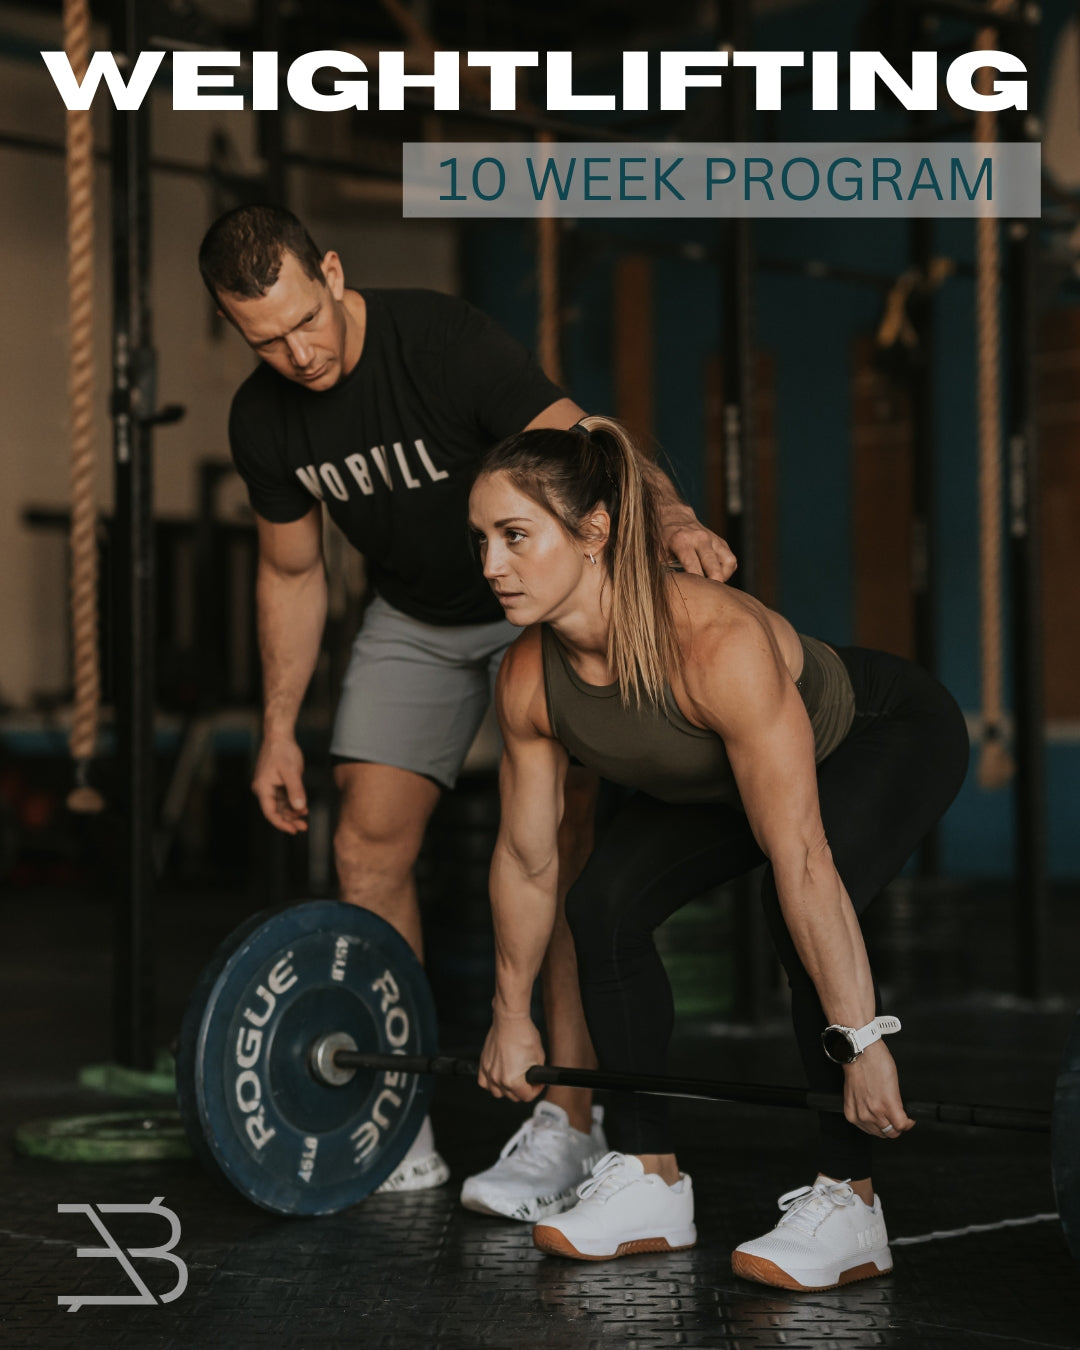 10 Week Weightlifting program